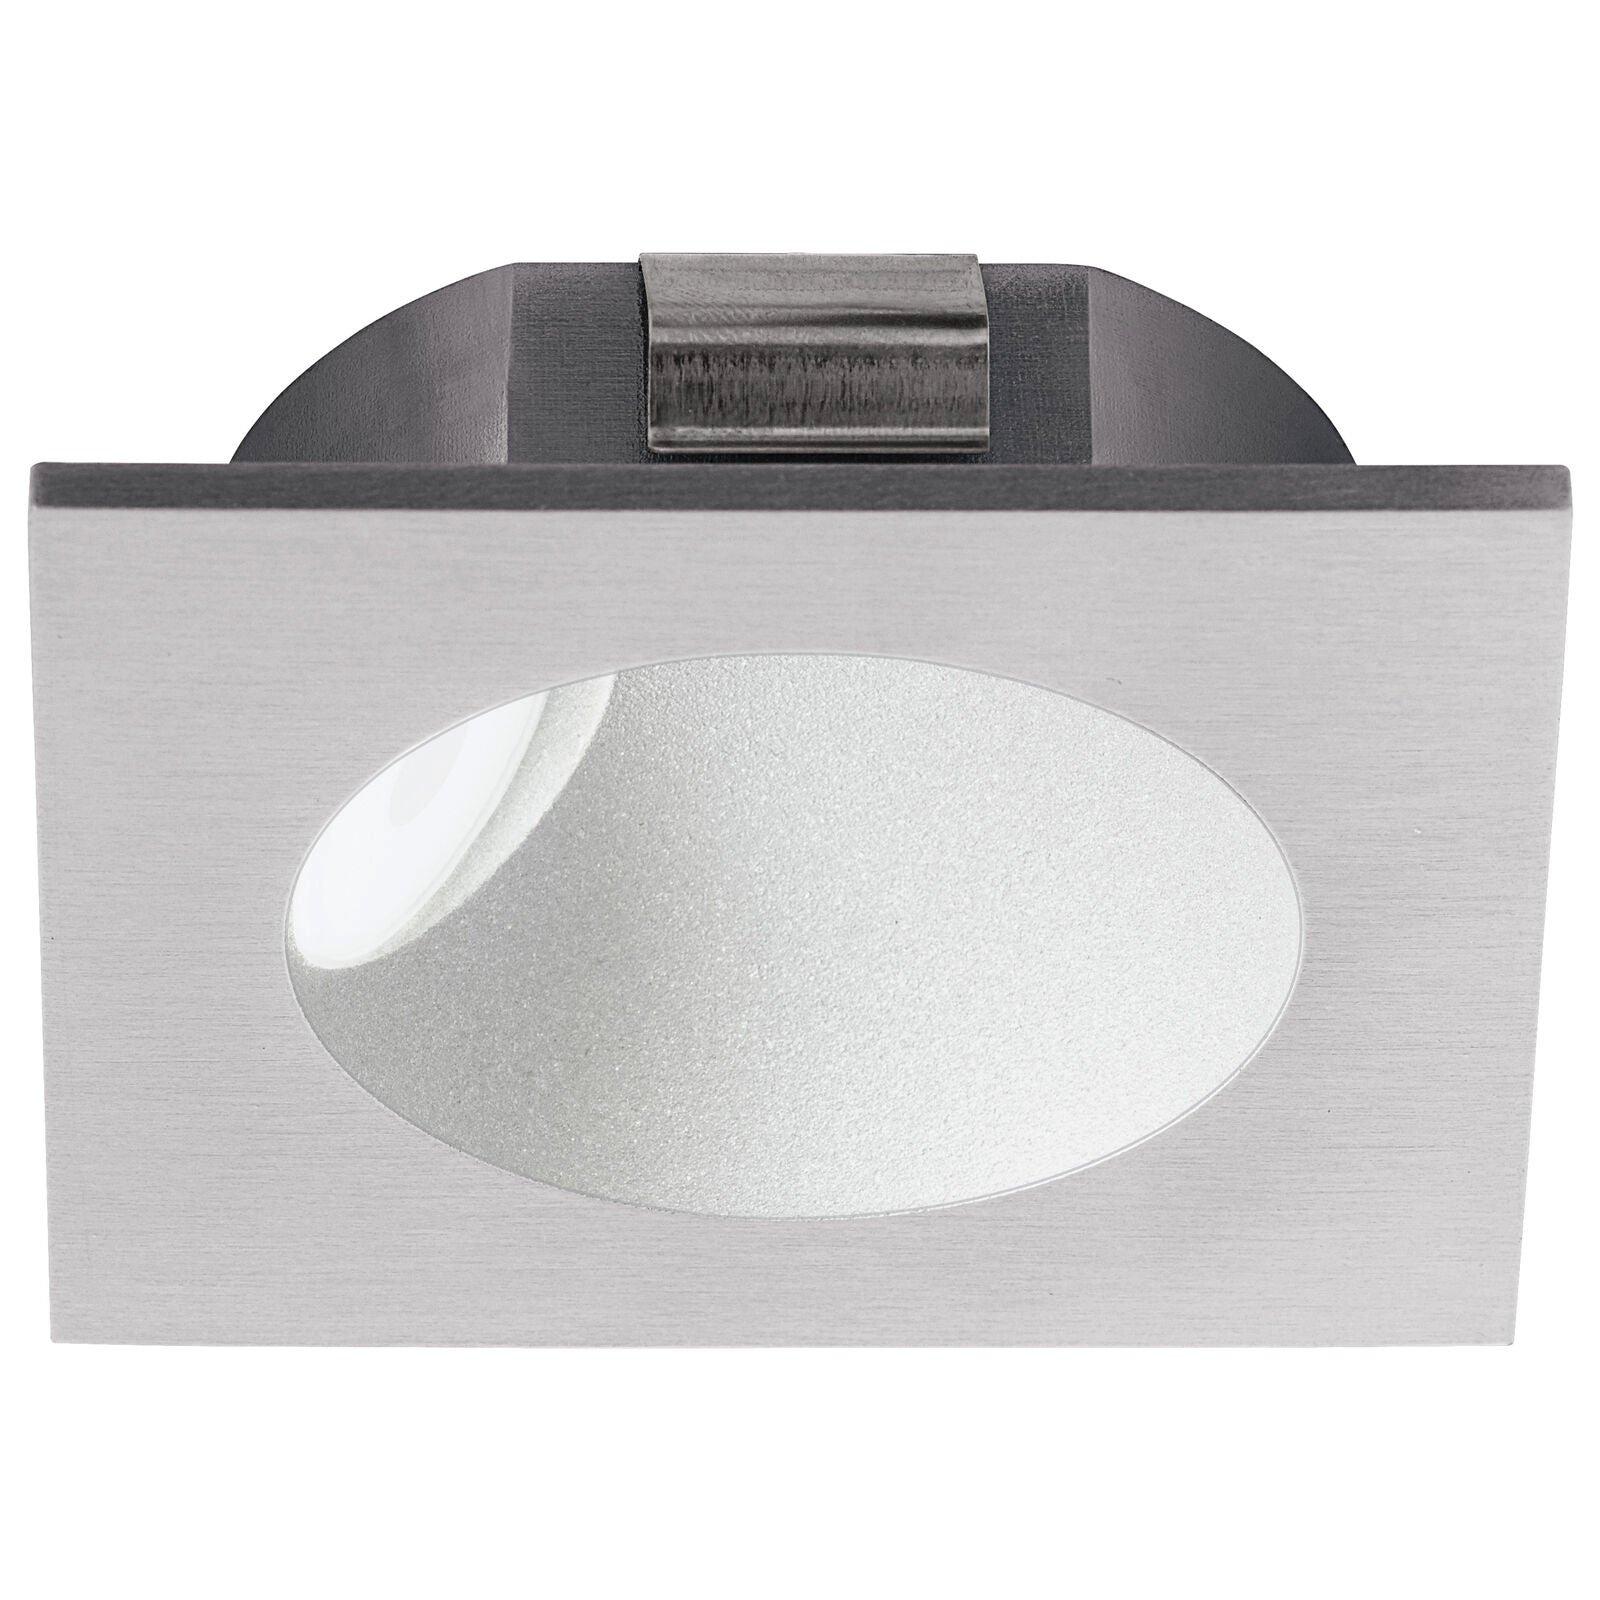 Wall / Ceiling Flush Downlight Silver Spotlight Aluminium 2W Built in LED